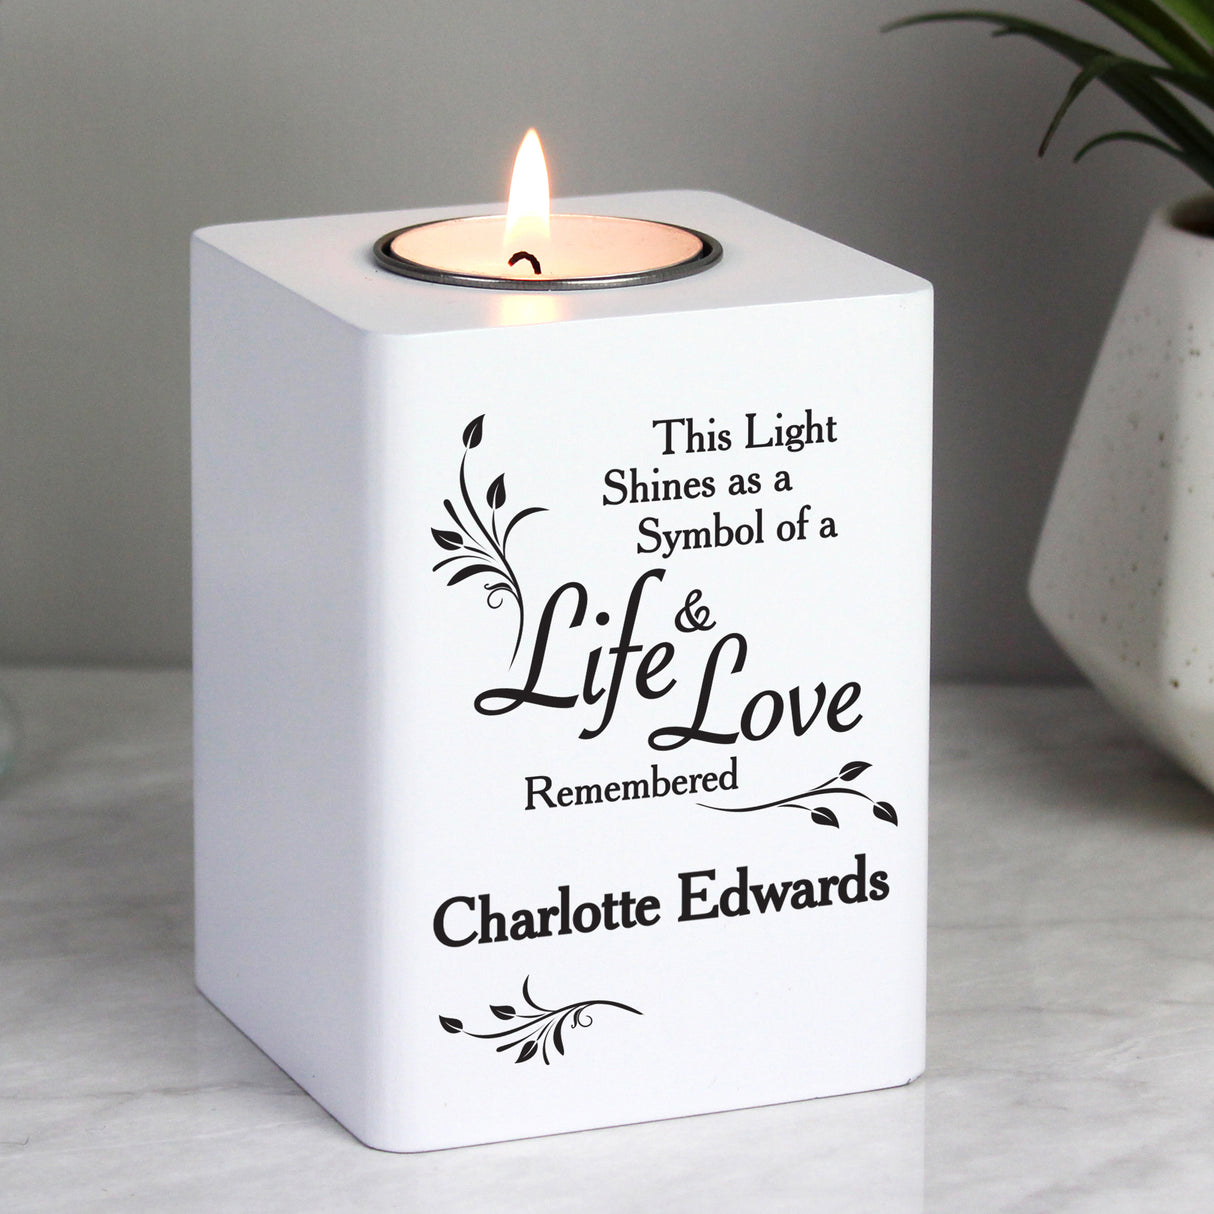 Life & Love Wooden Tea Light Holder - Gift Moments